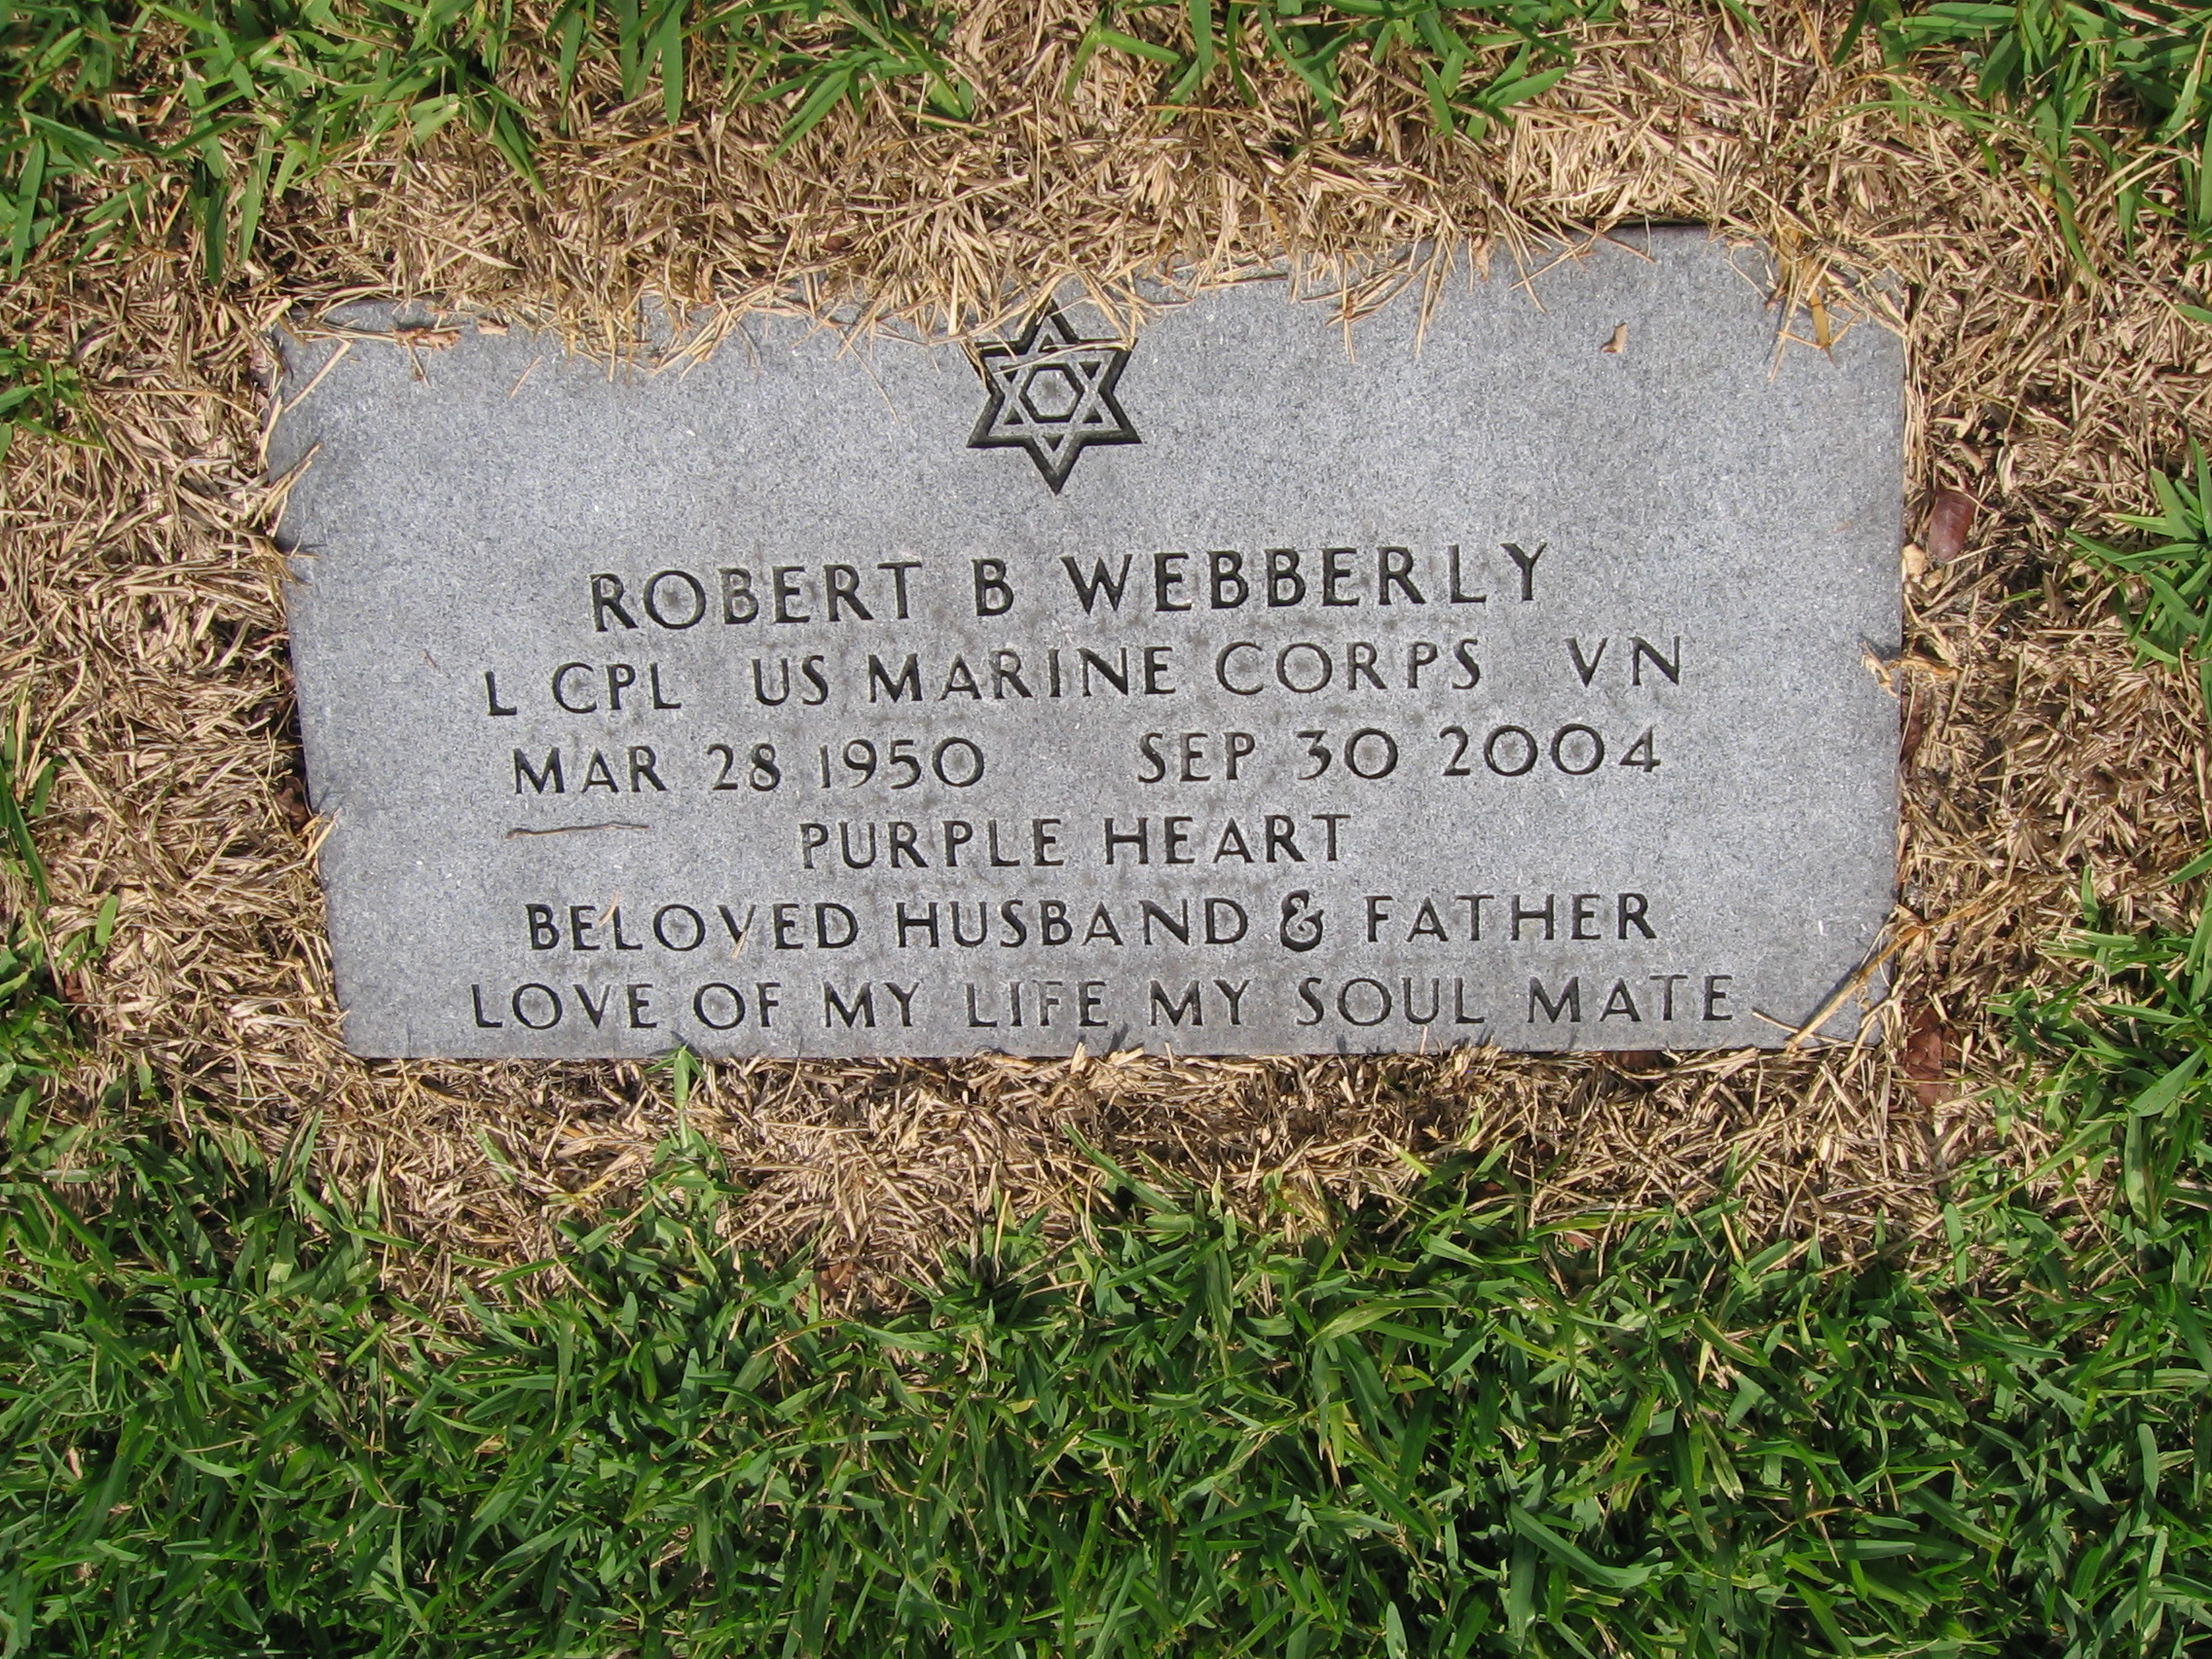 LCpl Robert B Webberly